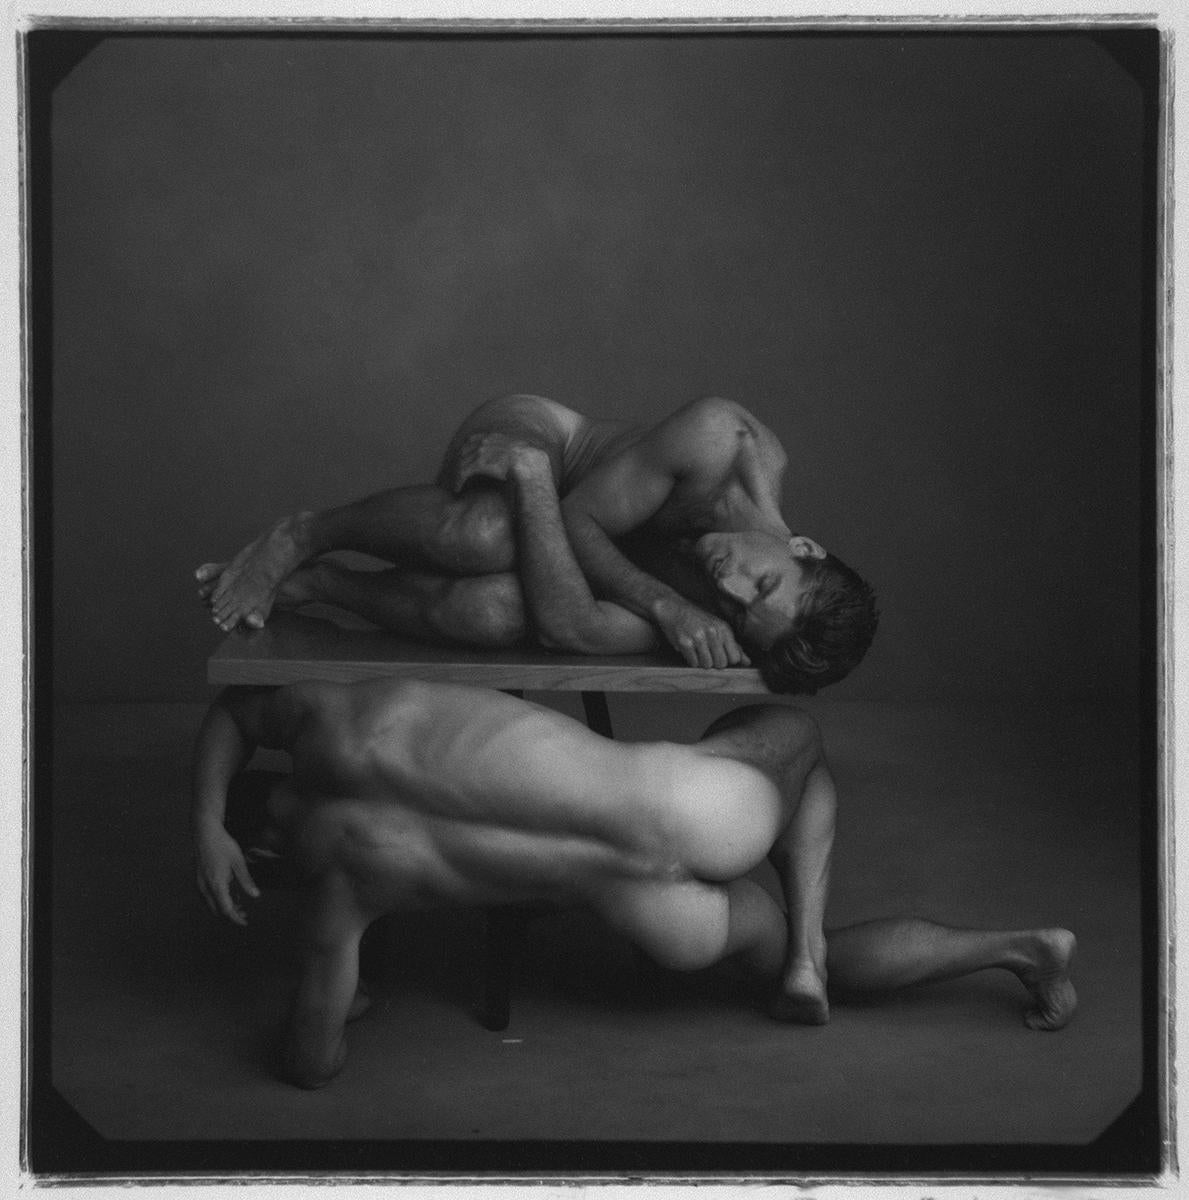 Annie Leibovitz Black and White Photograph - Two Men